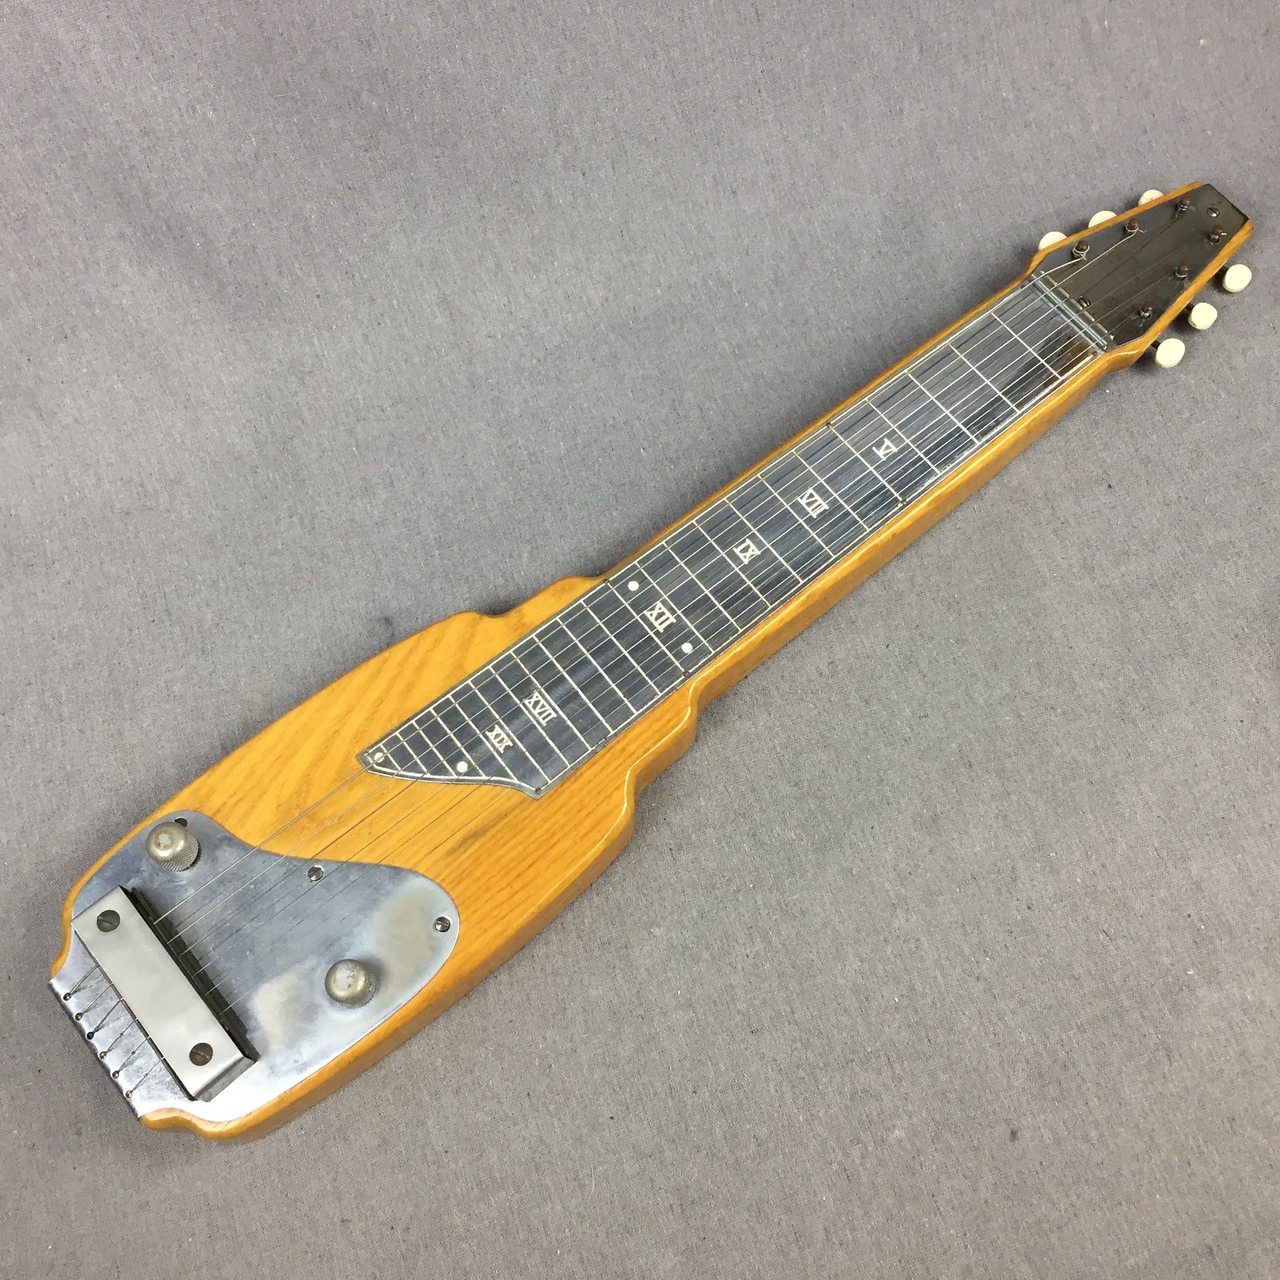 ラップスチールギター - 愛知県の楽器